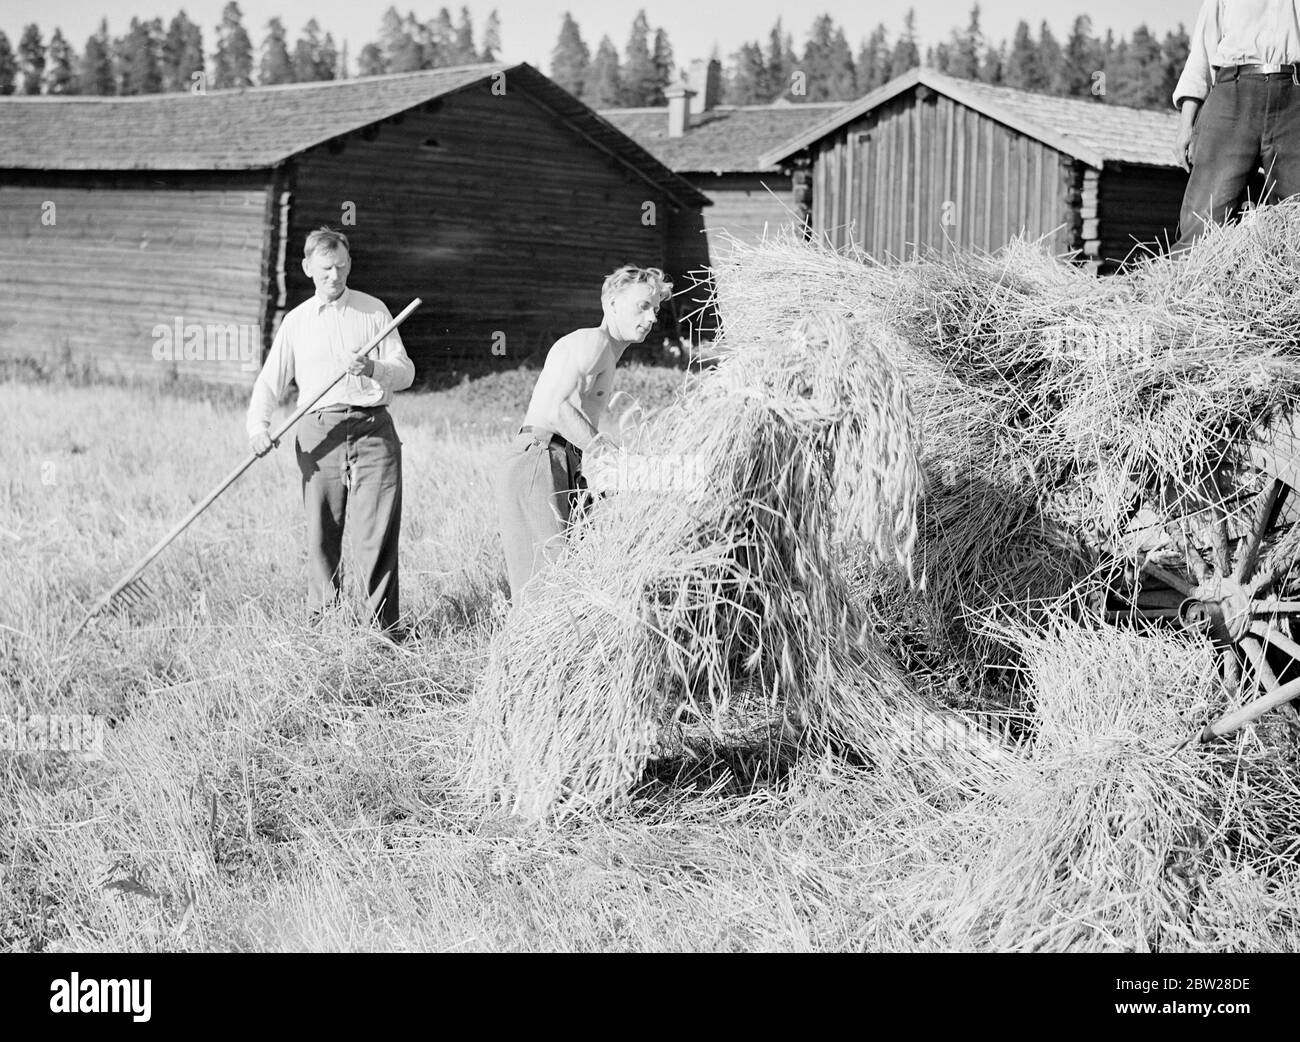 Farmers Finland - Finnish Daily Life Forest Academy of Korkeakoski 1939 aus einer Serie Diese Männer bauten die Mannerheim Linie - die finnische Zone der Grenzbefestigungen wurde vollständig von der finnischen Bevölkerung entworfen und gebaut. Finnische Ingenieure begannen die Arbeit auf der Linie im Jahr 1937, aber es war nicht bis in diesem Sommer im Jahr 1939, dass die Arbeiten beschleunigt und abgeschlossen. Dann, im Bewusstsein der Gefahren einer schwachen Grenze, gaben junge finnische Männer und Studenten ihre Sommerferien auf, um freiwillig beim Bau von Panzerfallen und Befestigungsanlagen zu helfen. Stockfoto